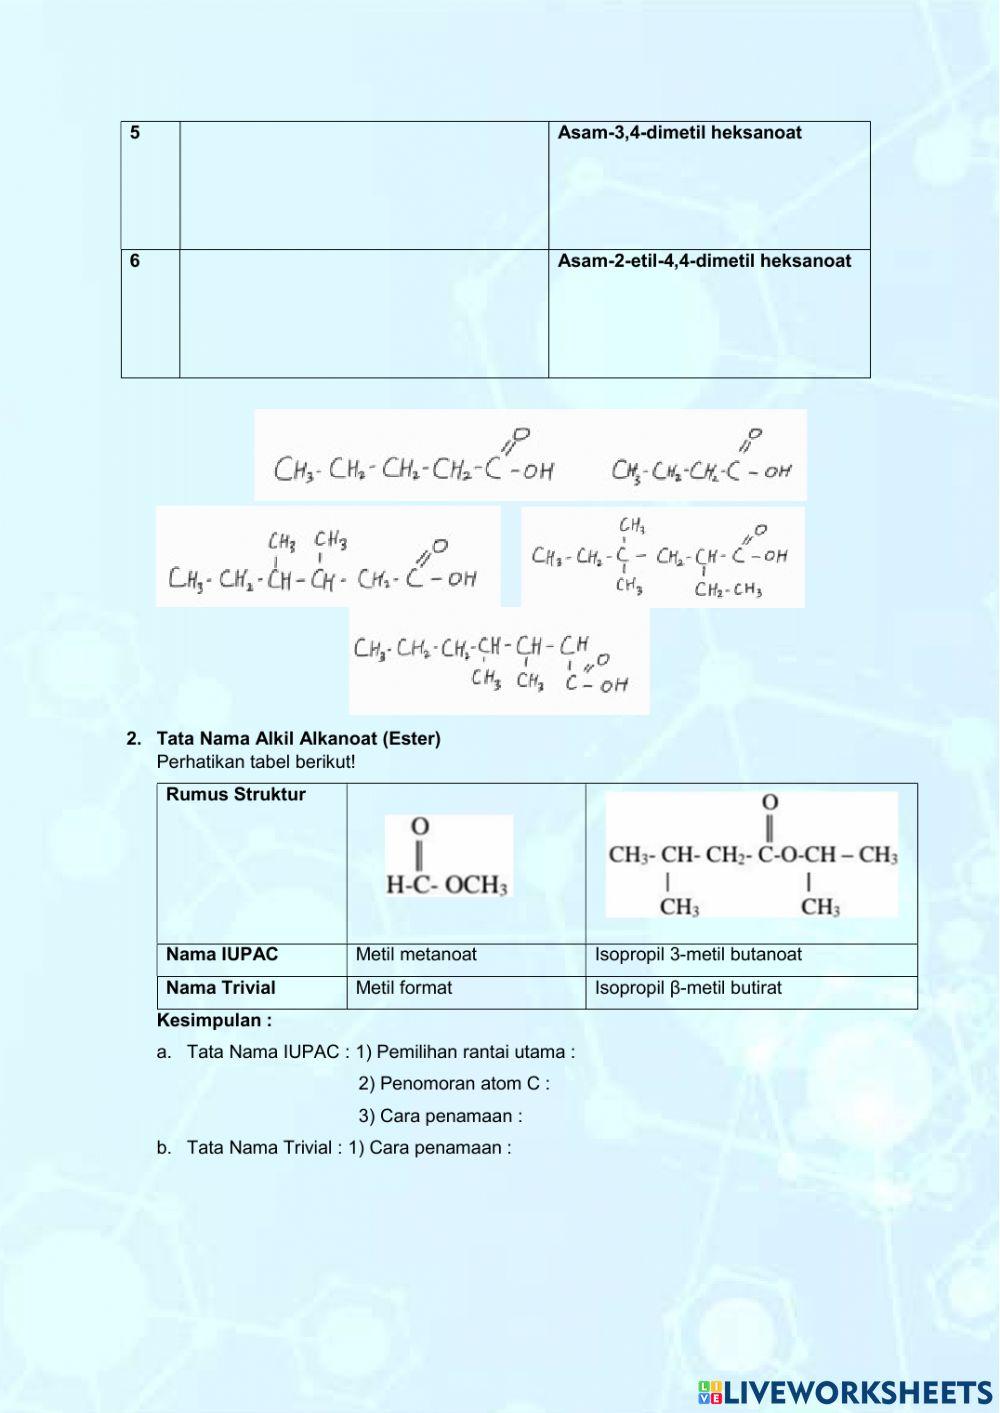 LKPD Senyawa asam alkanoat dan alkil alkanoat